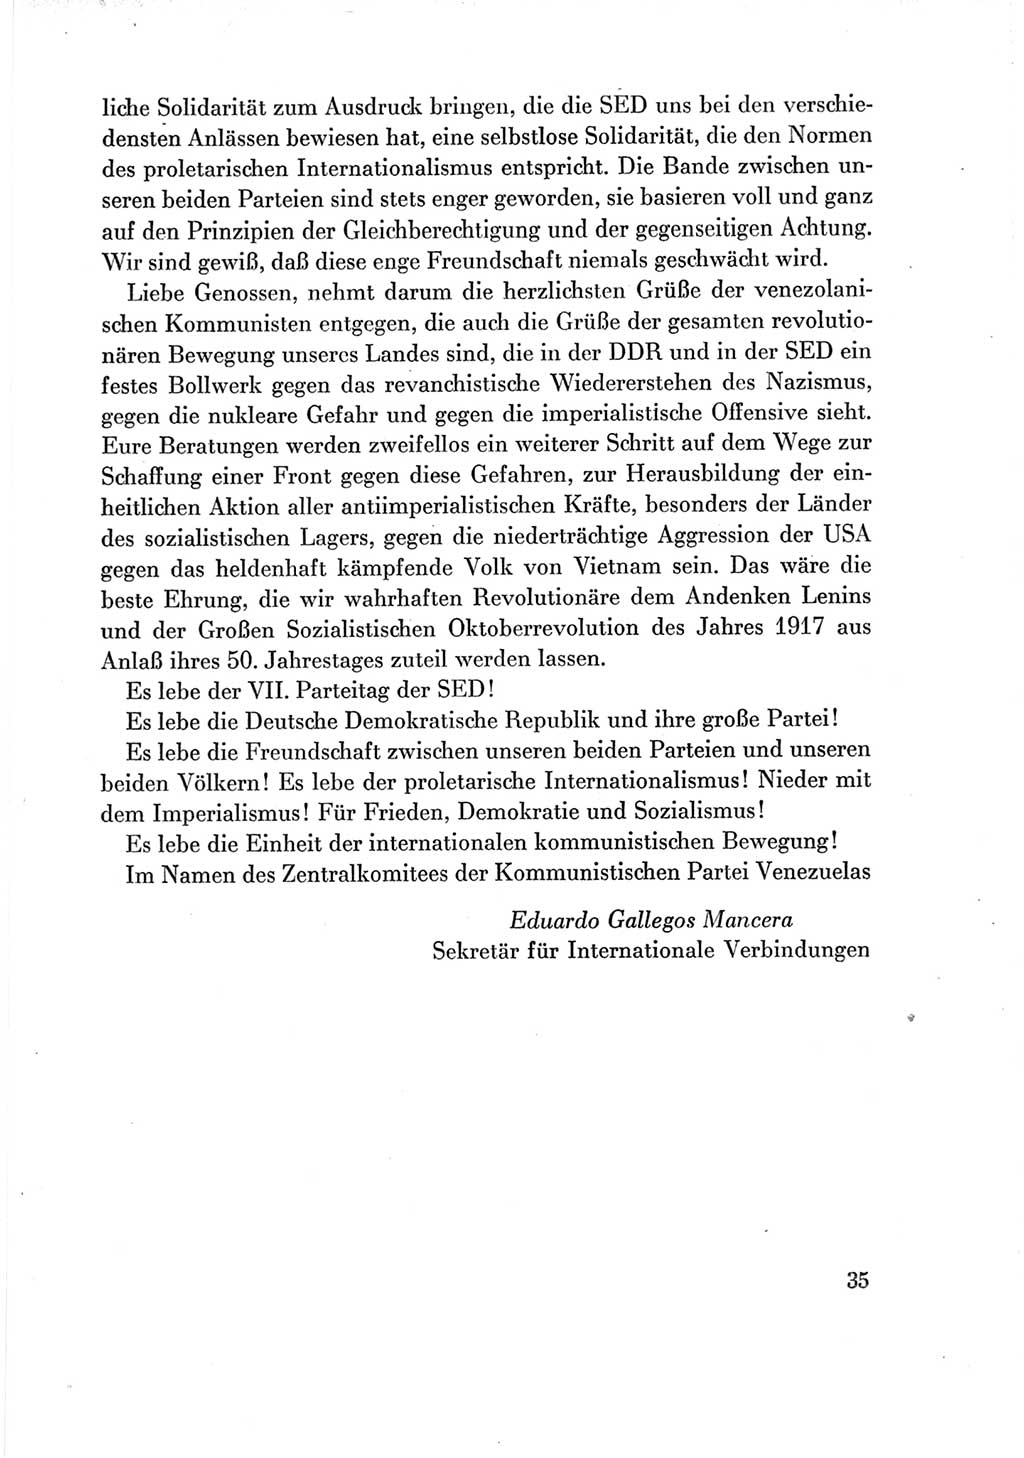 Protokoll der Verhandlungen des Ⅶ. Parteitages der Sozialistischen Einheitspartei Deutschlands (SED) [Deutsche Demokratische Republik (DDR)] 1967, Band Ⅲ, Seite 35 (Prot. Verh. Ⅶ. PT SED DDR 1967, Bd. Ⅲ, S. 35)